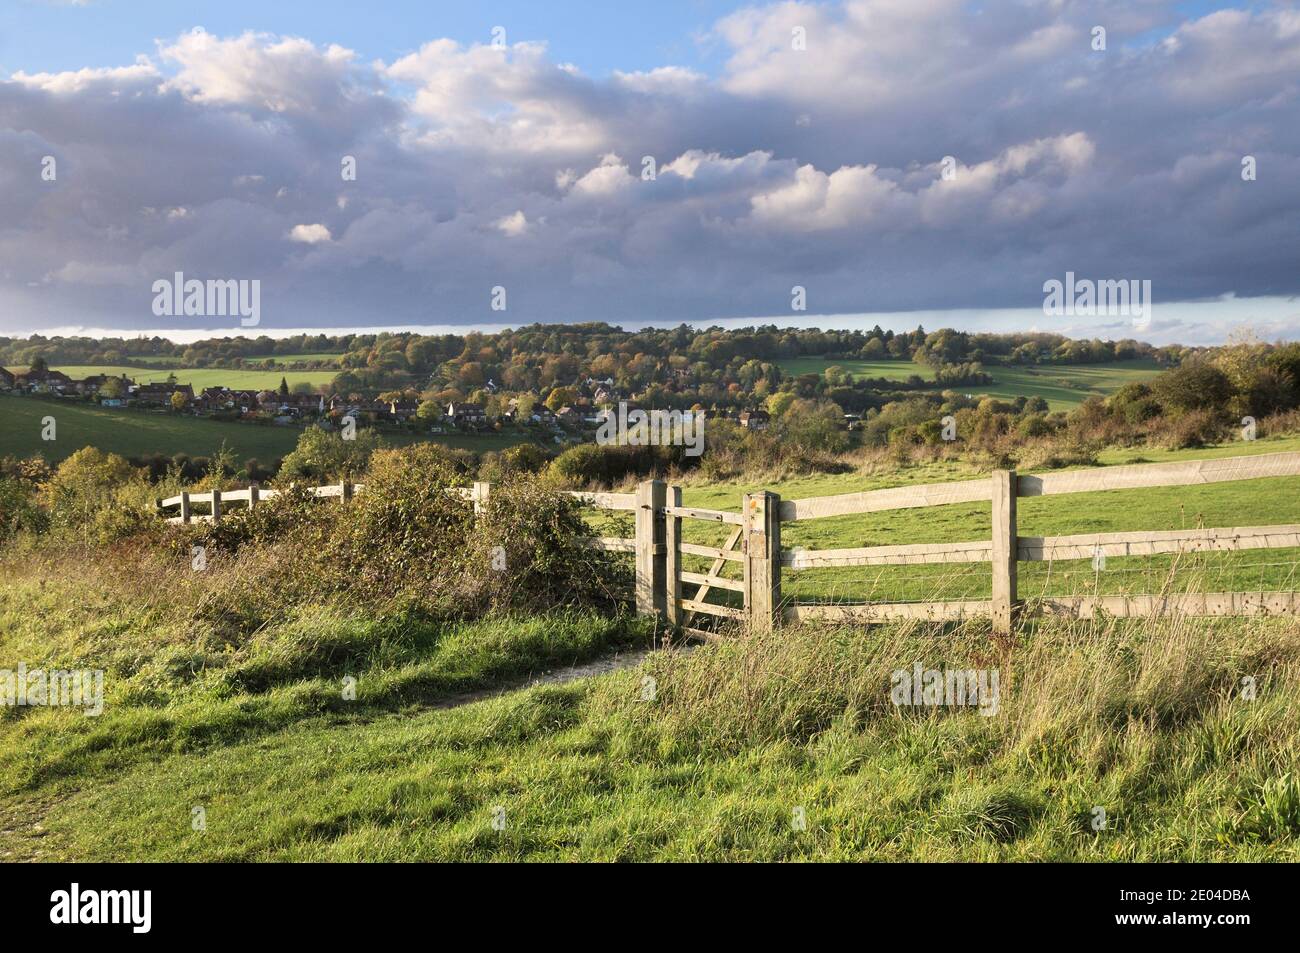 Cancello e recinzione su Farthing Downs, South London Downs National Nature Reserve, che comprende 121 ettari di campagna sul confine tra Surrey e Croydon, Regno Unito Foto Stock